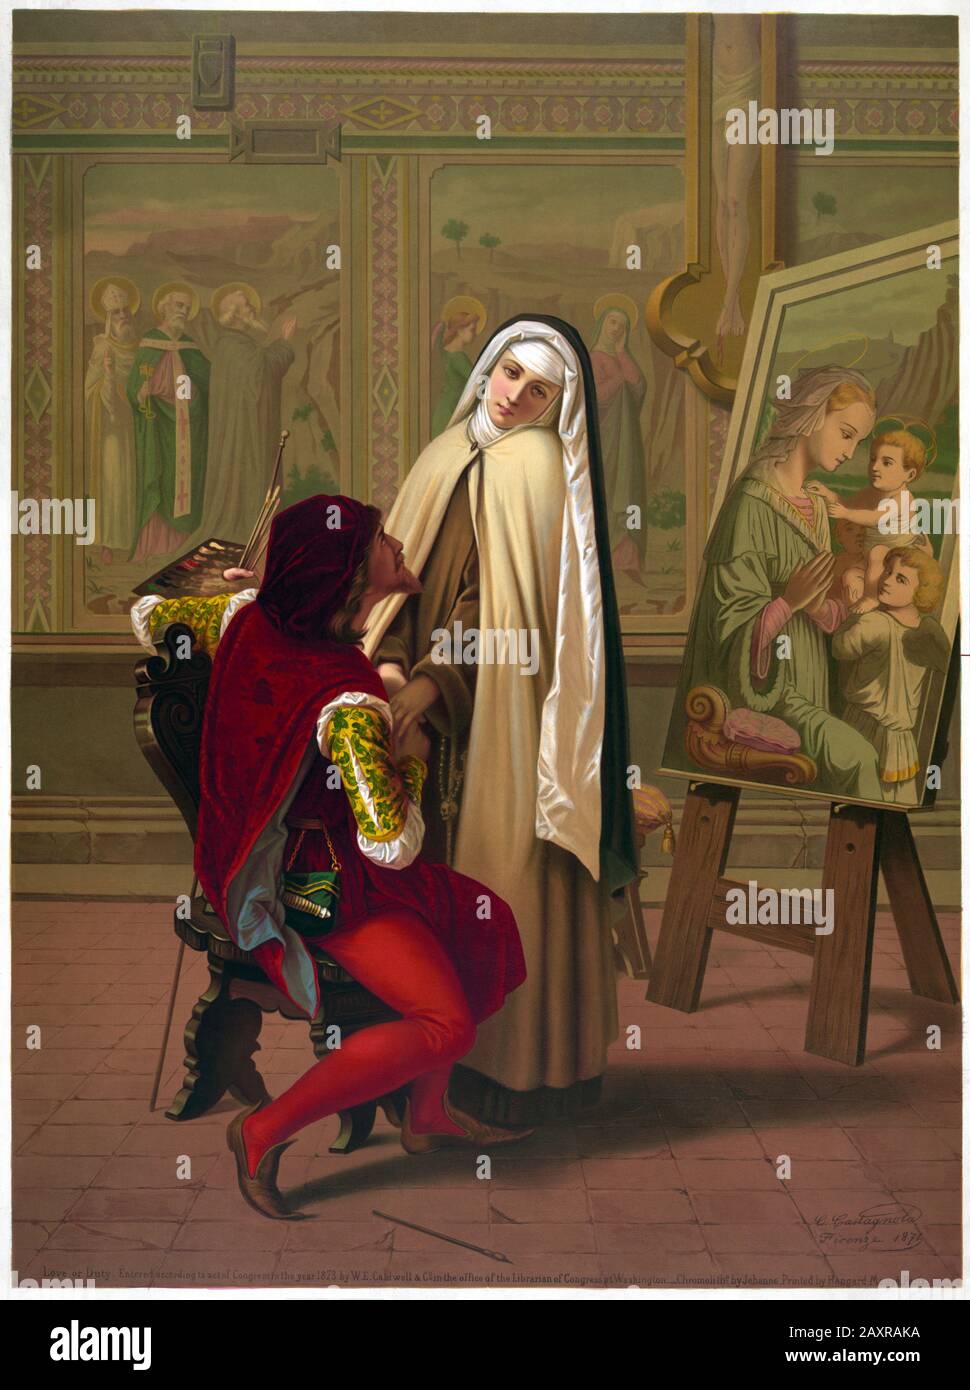 1871 , ITALIA : il pittore italiano GABRIELE CASTAGNOLA ( 1828 - 1883 ) amore o DOVERE artistico ( Amore o vivere ). In questa immagine ristampata in chromolithograph da Jehenne negli Stati Uniti ( 1873 ), stampata da Hangard - Maugé , Parigi , Francia . Il romanticismo del pittore del primo Rinascimento FILIPPO LIPPI ( 1406 - 1469 ) con IL giovane novizio LUCREZIA BUTI ( nato nel 1435 ) è un tema ricorrente nelle opere della Castagnola, così come le monache in generale . Arte - ARTE - STORIA - FOTO STORICHE - pittore - pittore - cavalletto - Madonna - SUORA - mano nella mano - tavolozza - Tavolozza - amanti - amanti - inna Foto Stock